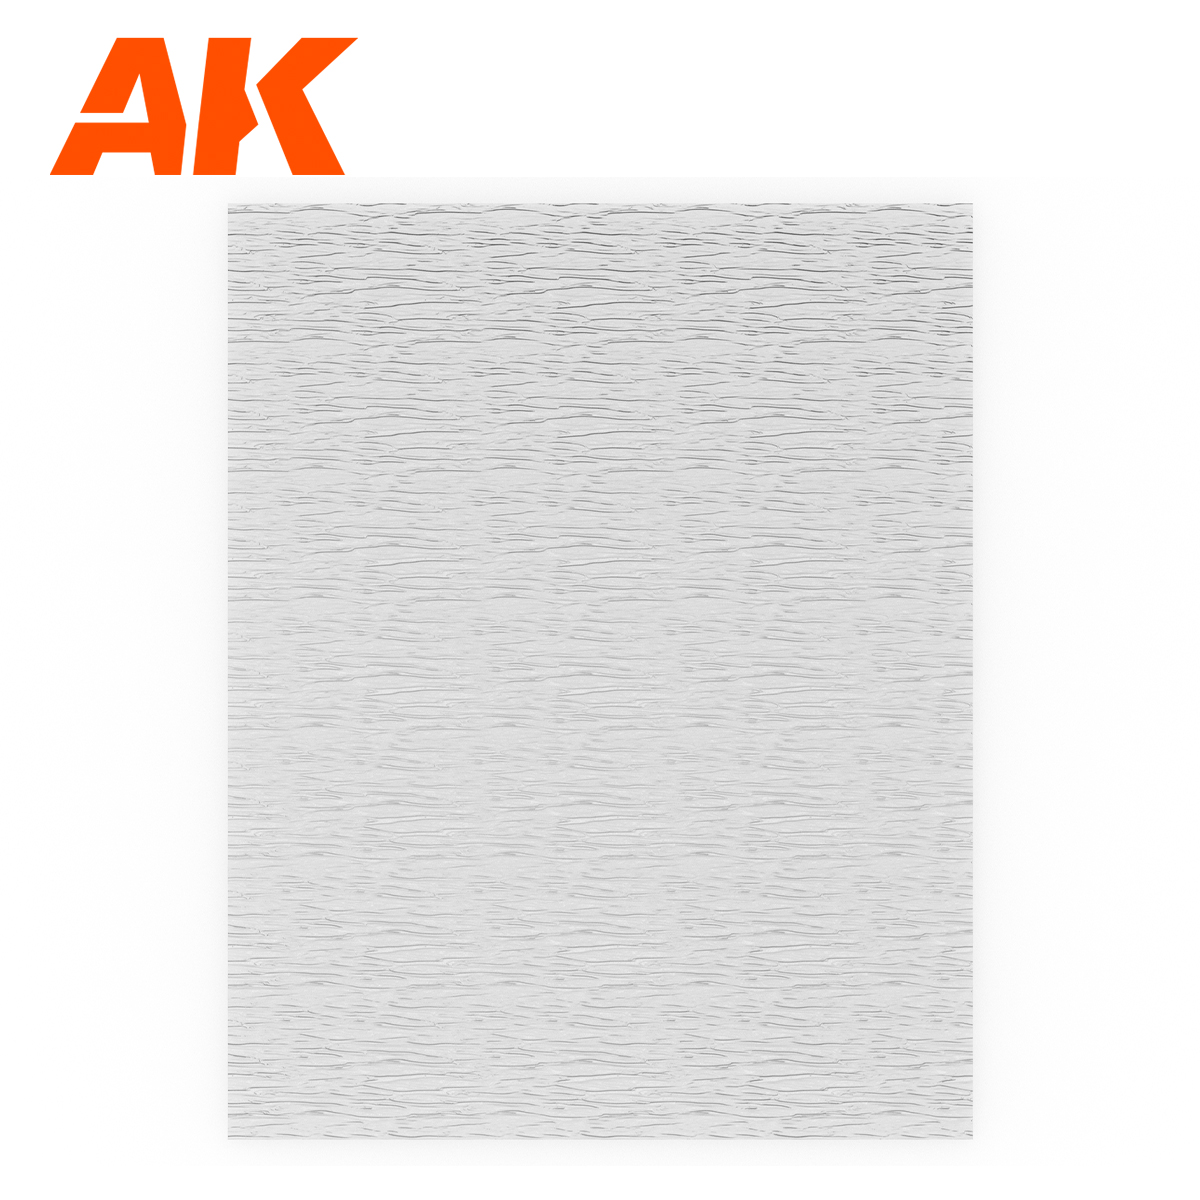 Water Sheet Transparent Running Water 245 x 195mm / 9.64 x 7.68 “  – TEXTURED ACRYLIC SHEET – 1 Unit 